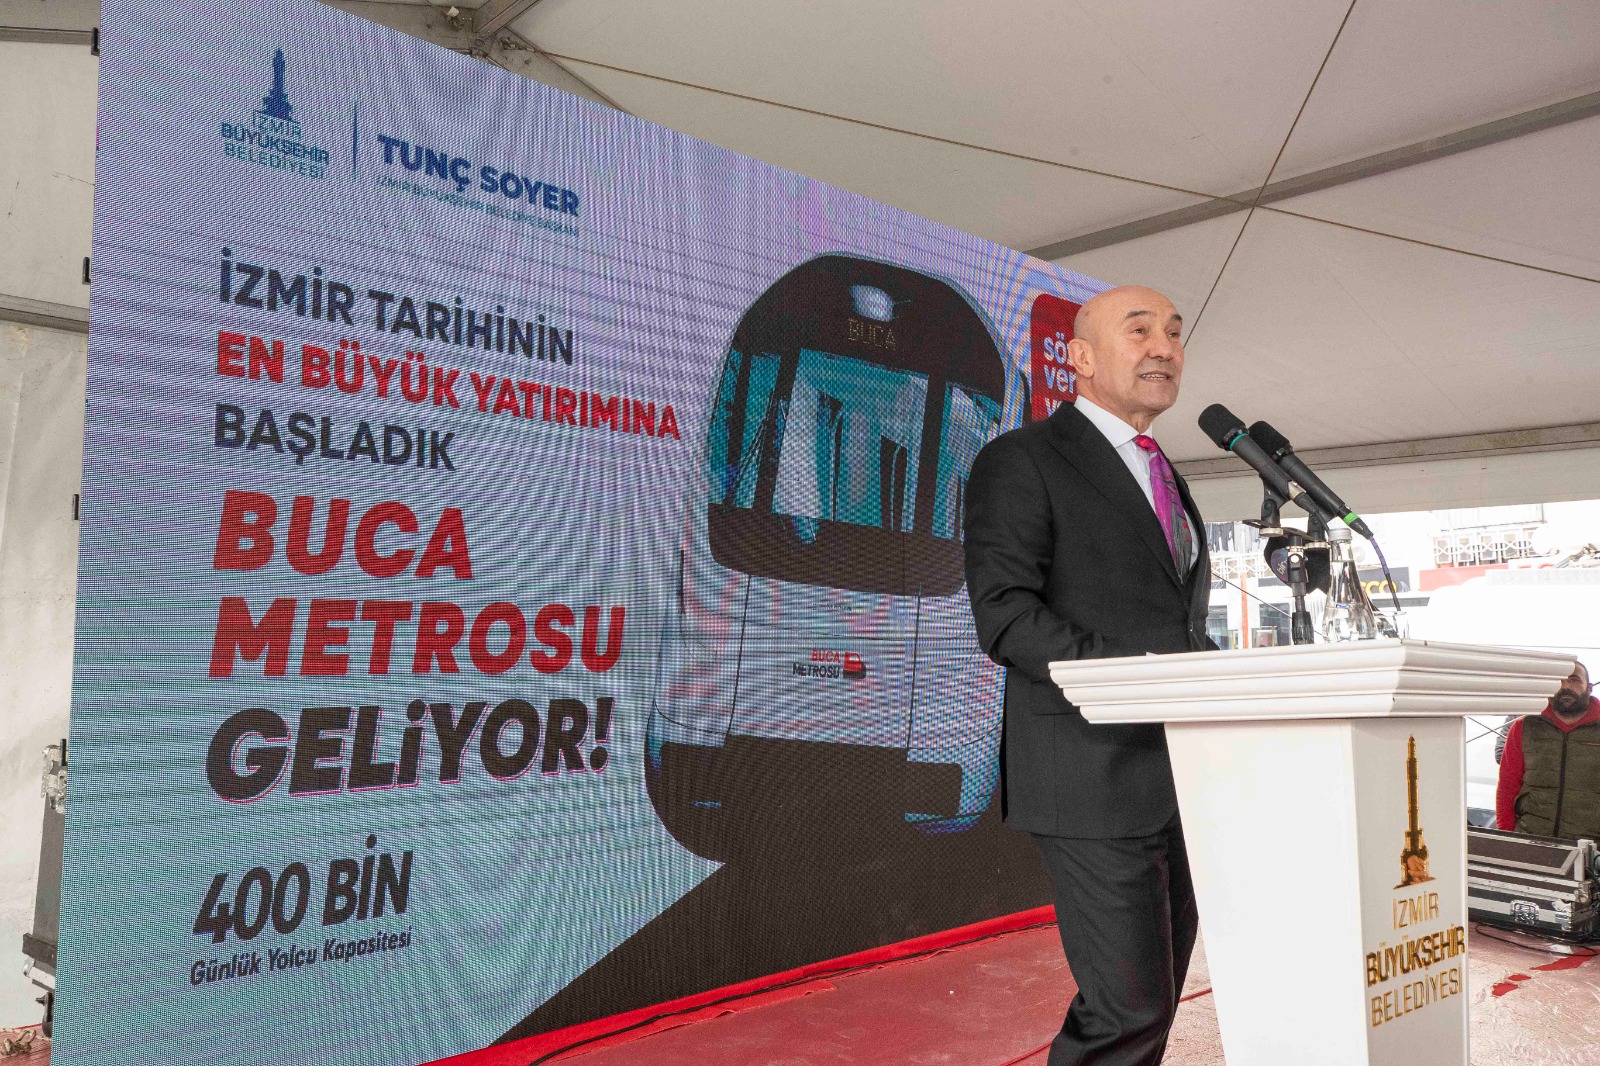 Başkan Soyer: “Buca Metrosu dünyada fizibilitesi en yüksek metro yatırımlarından biri''